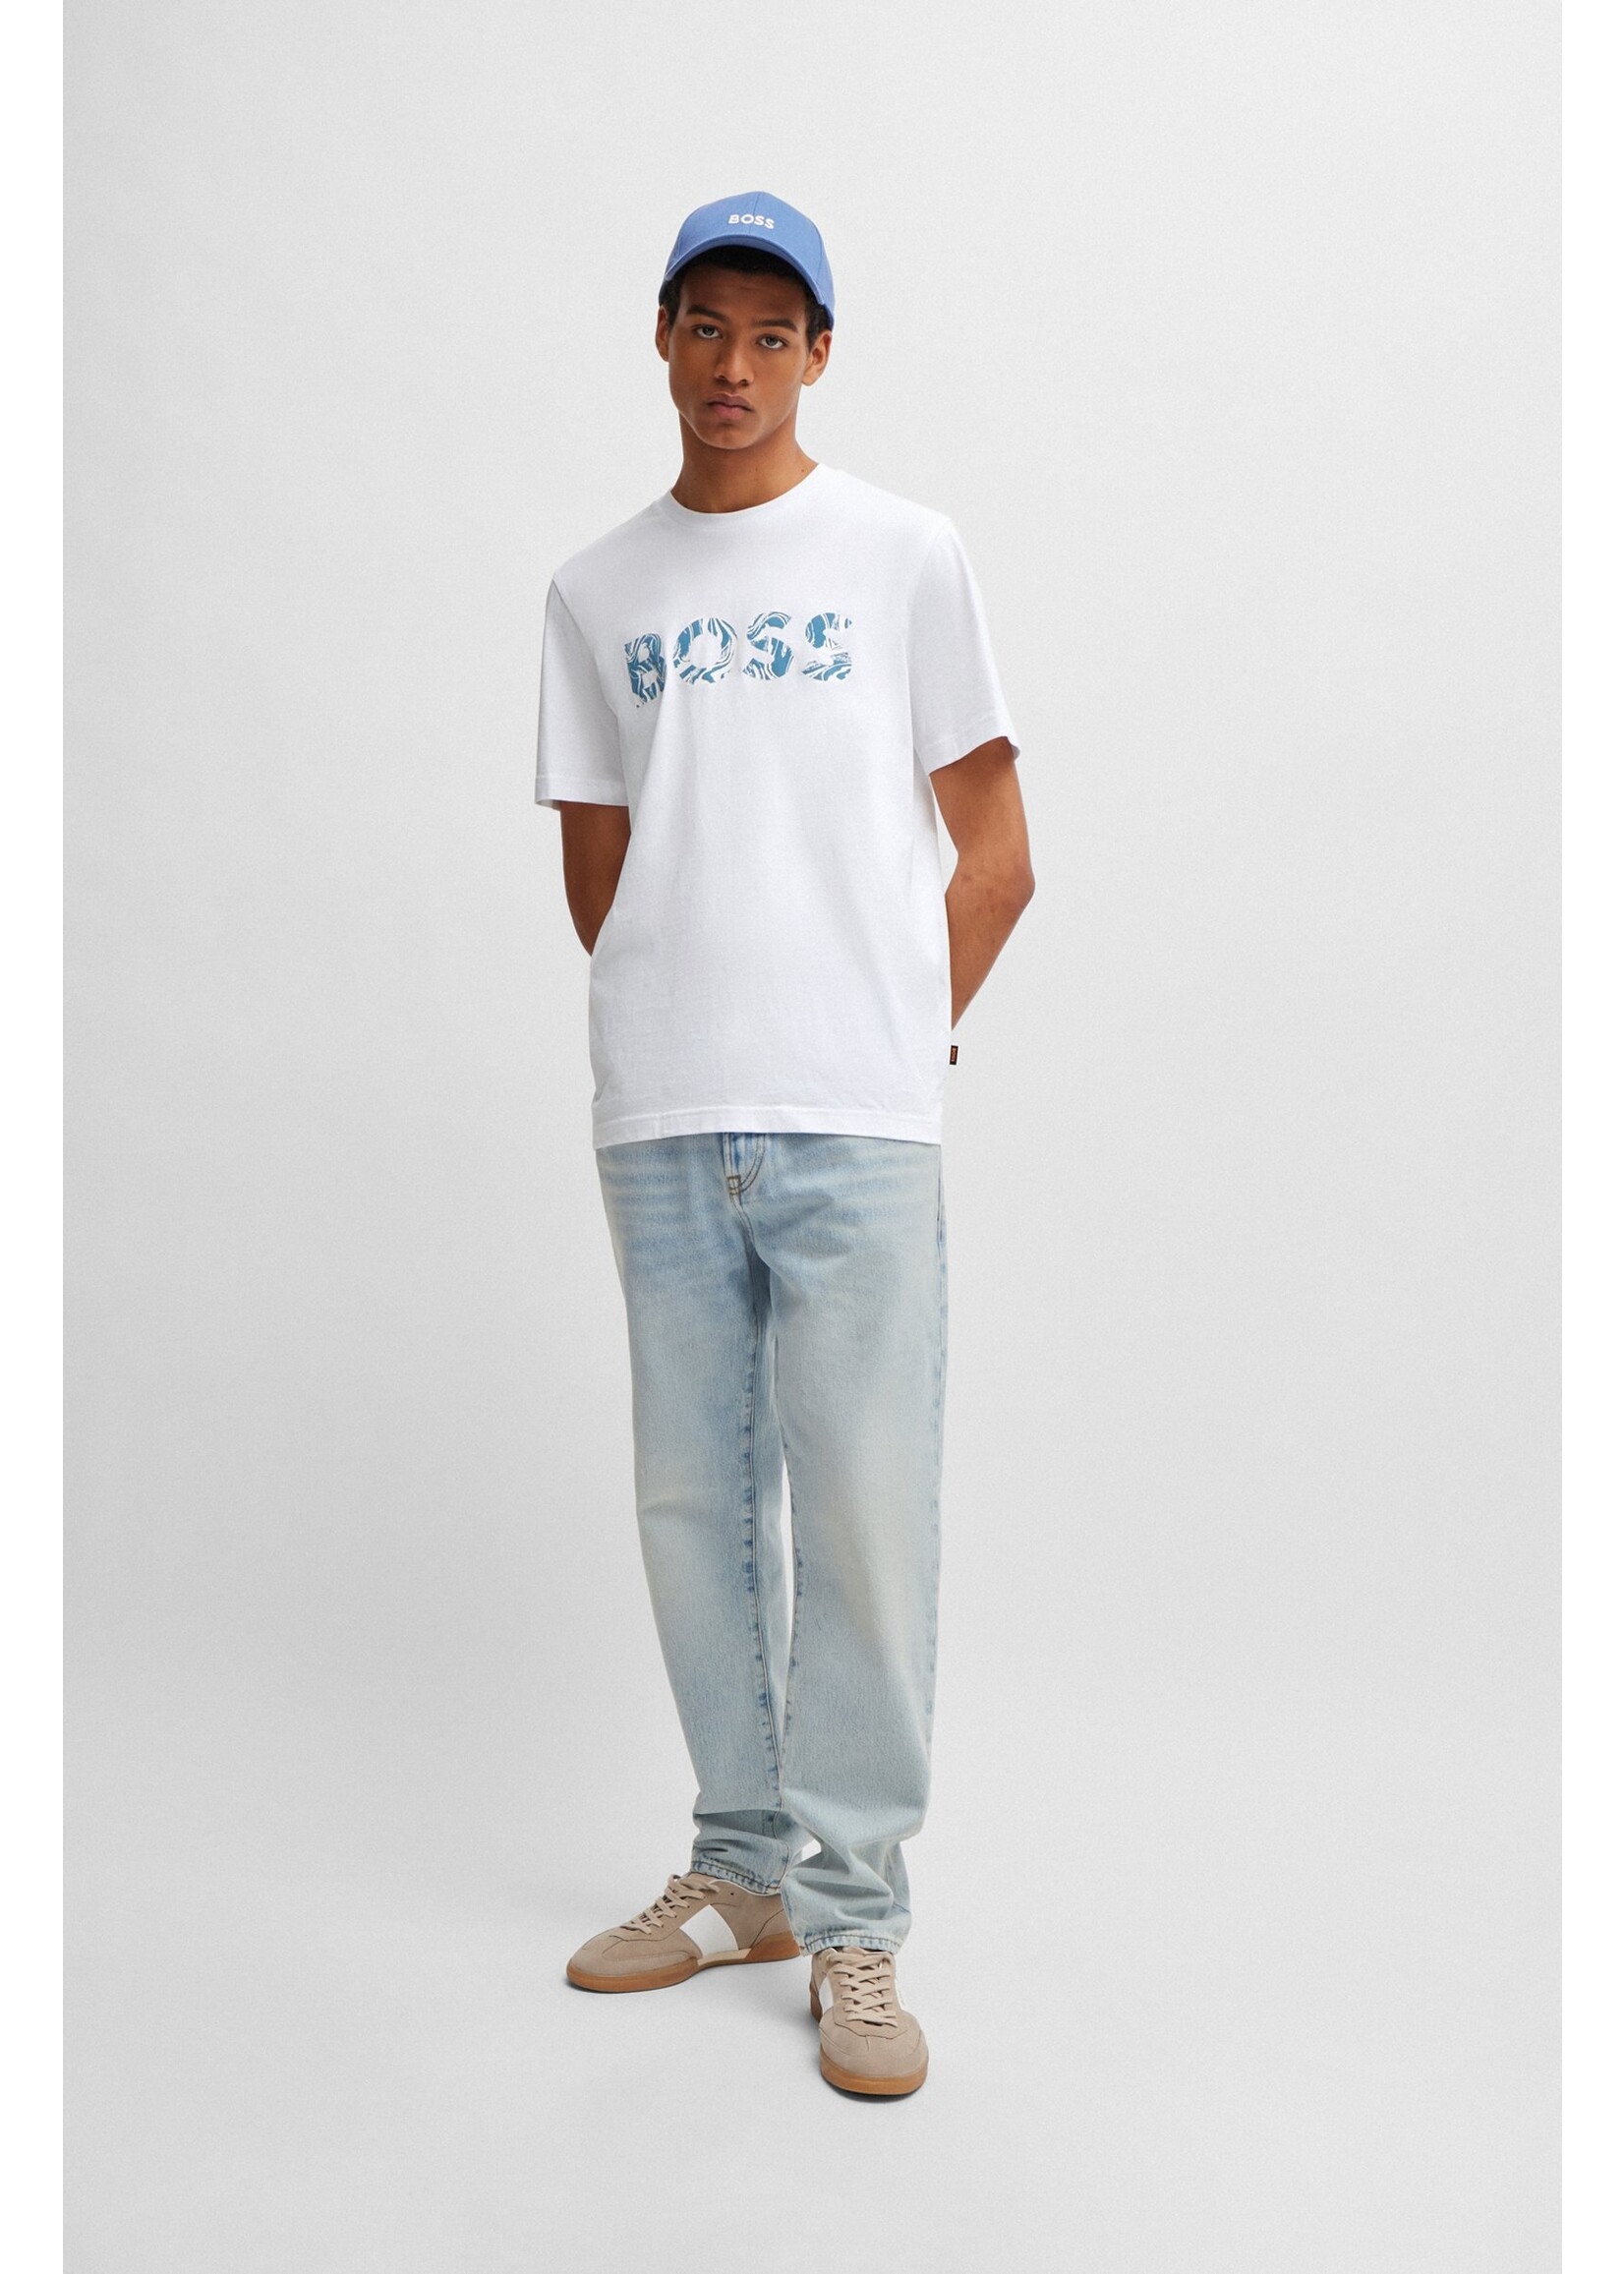 HUGO BOSS Hugo Boss - Ocean T-shirt - Wit